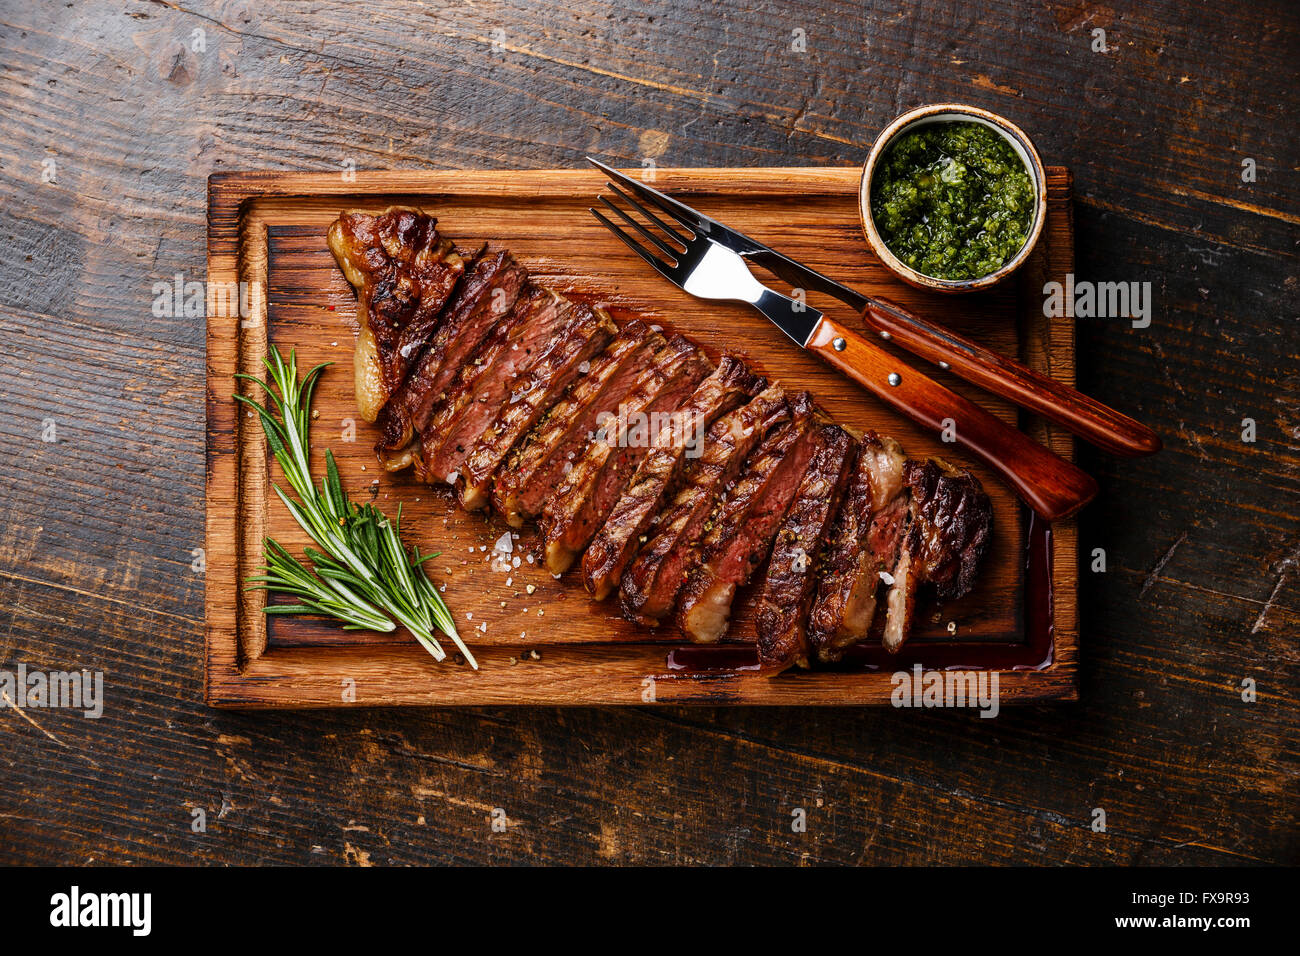 Gegrilltes Rindfleisch Grill Striploin Steak mit Chimichurri-Sauce auf Schneidebrett auf dunklem Holz geschnitten Stockfoto